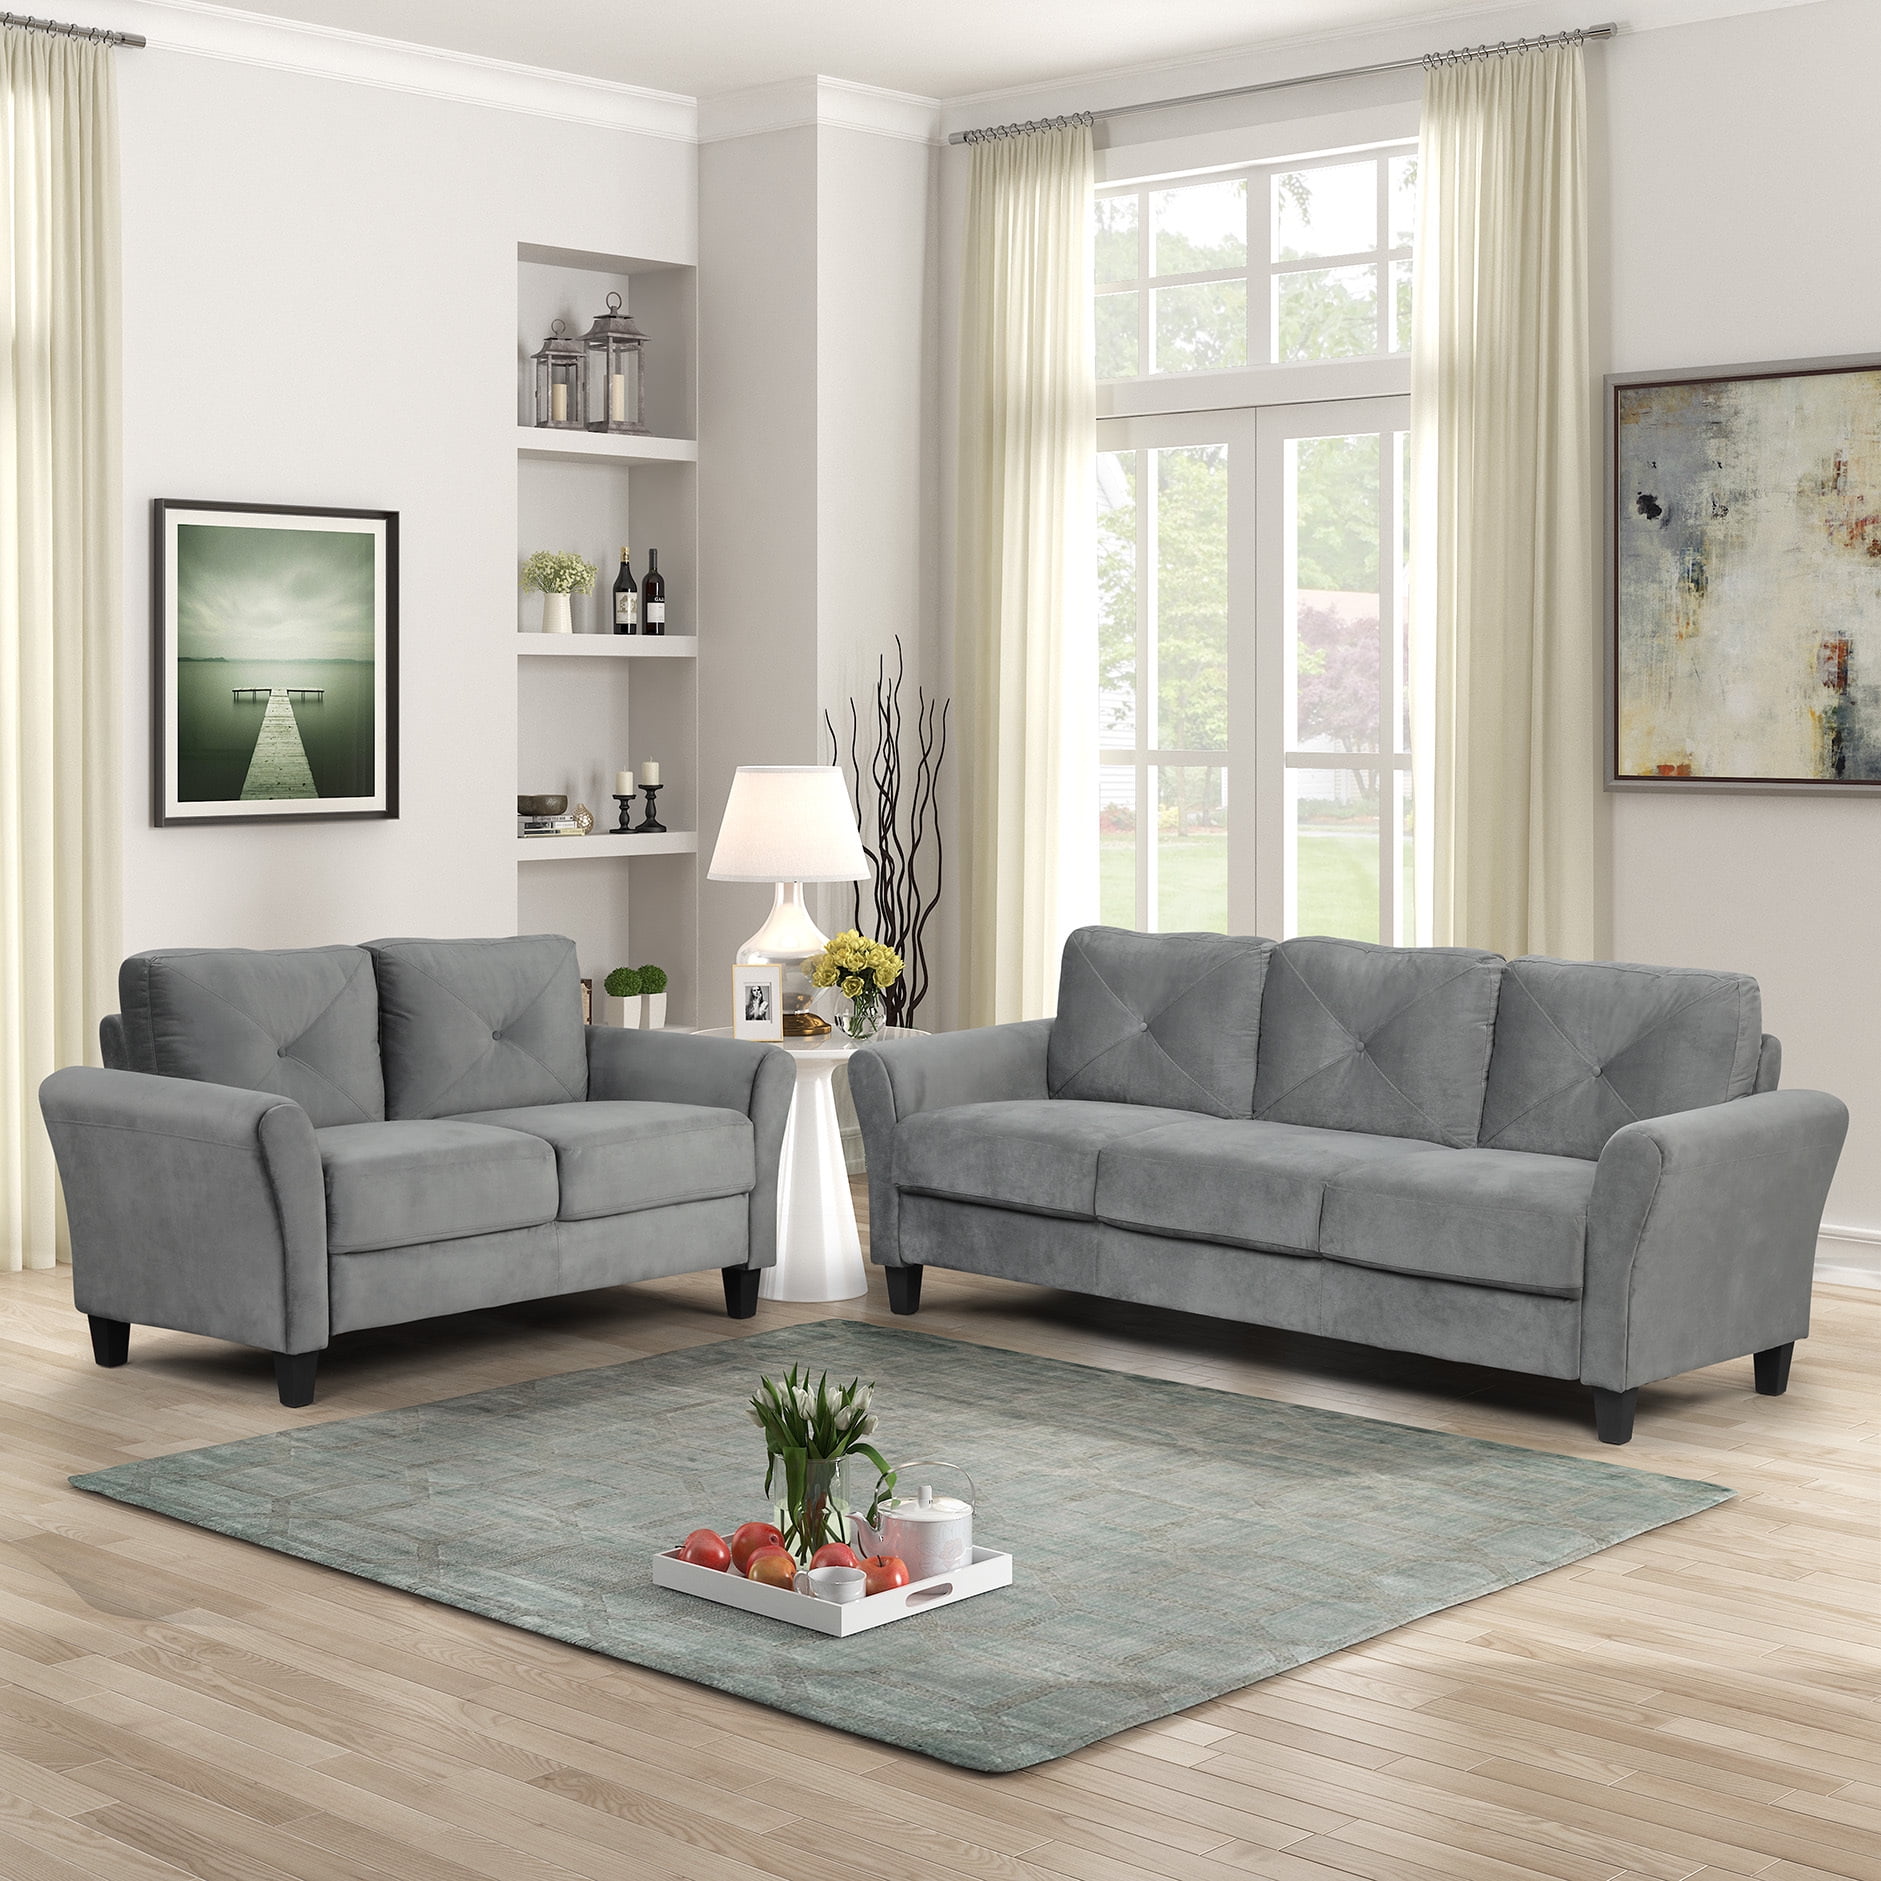 2 Piece Sectional Sofa Set Living Room